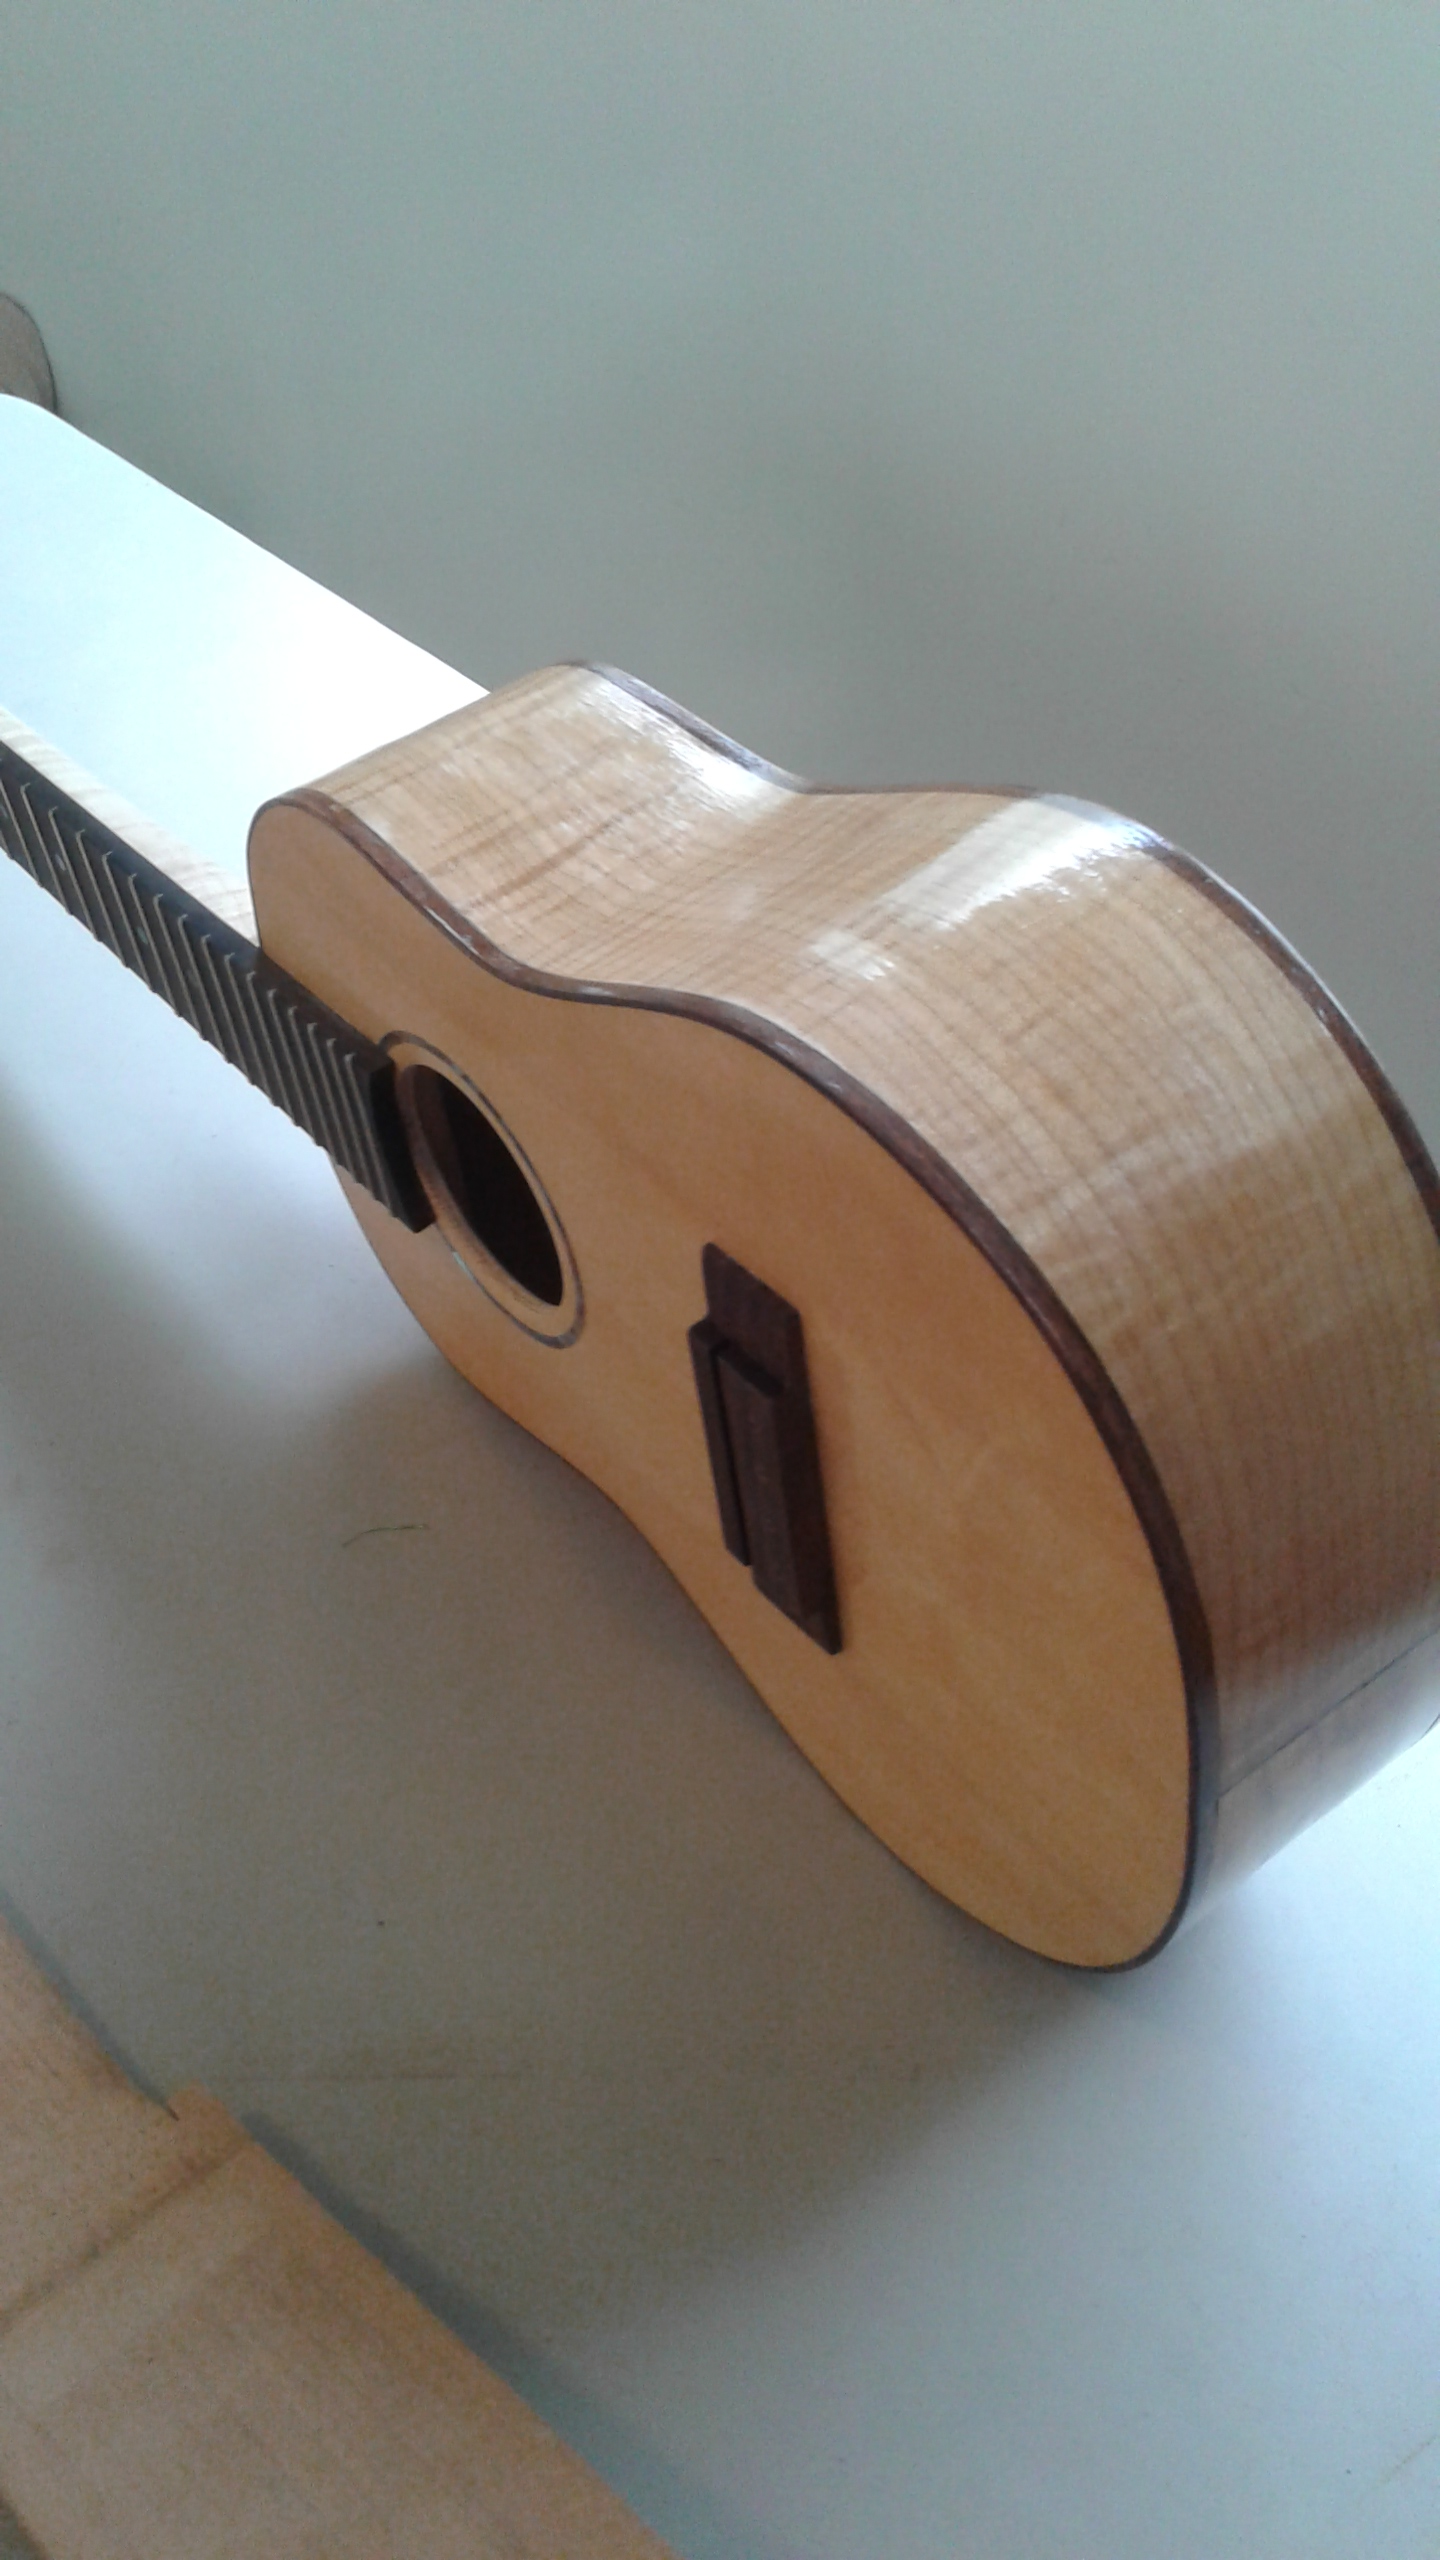 Maple and Swiss Spruce tenor ukulele